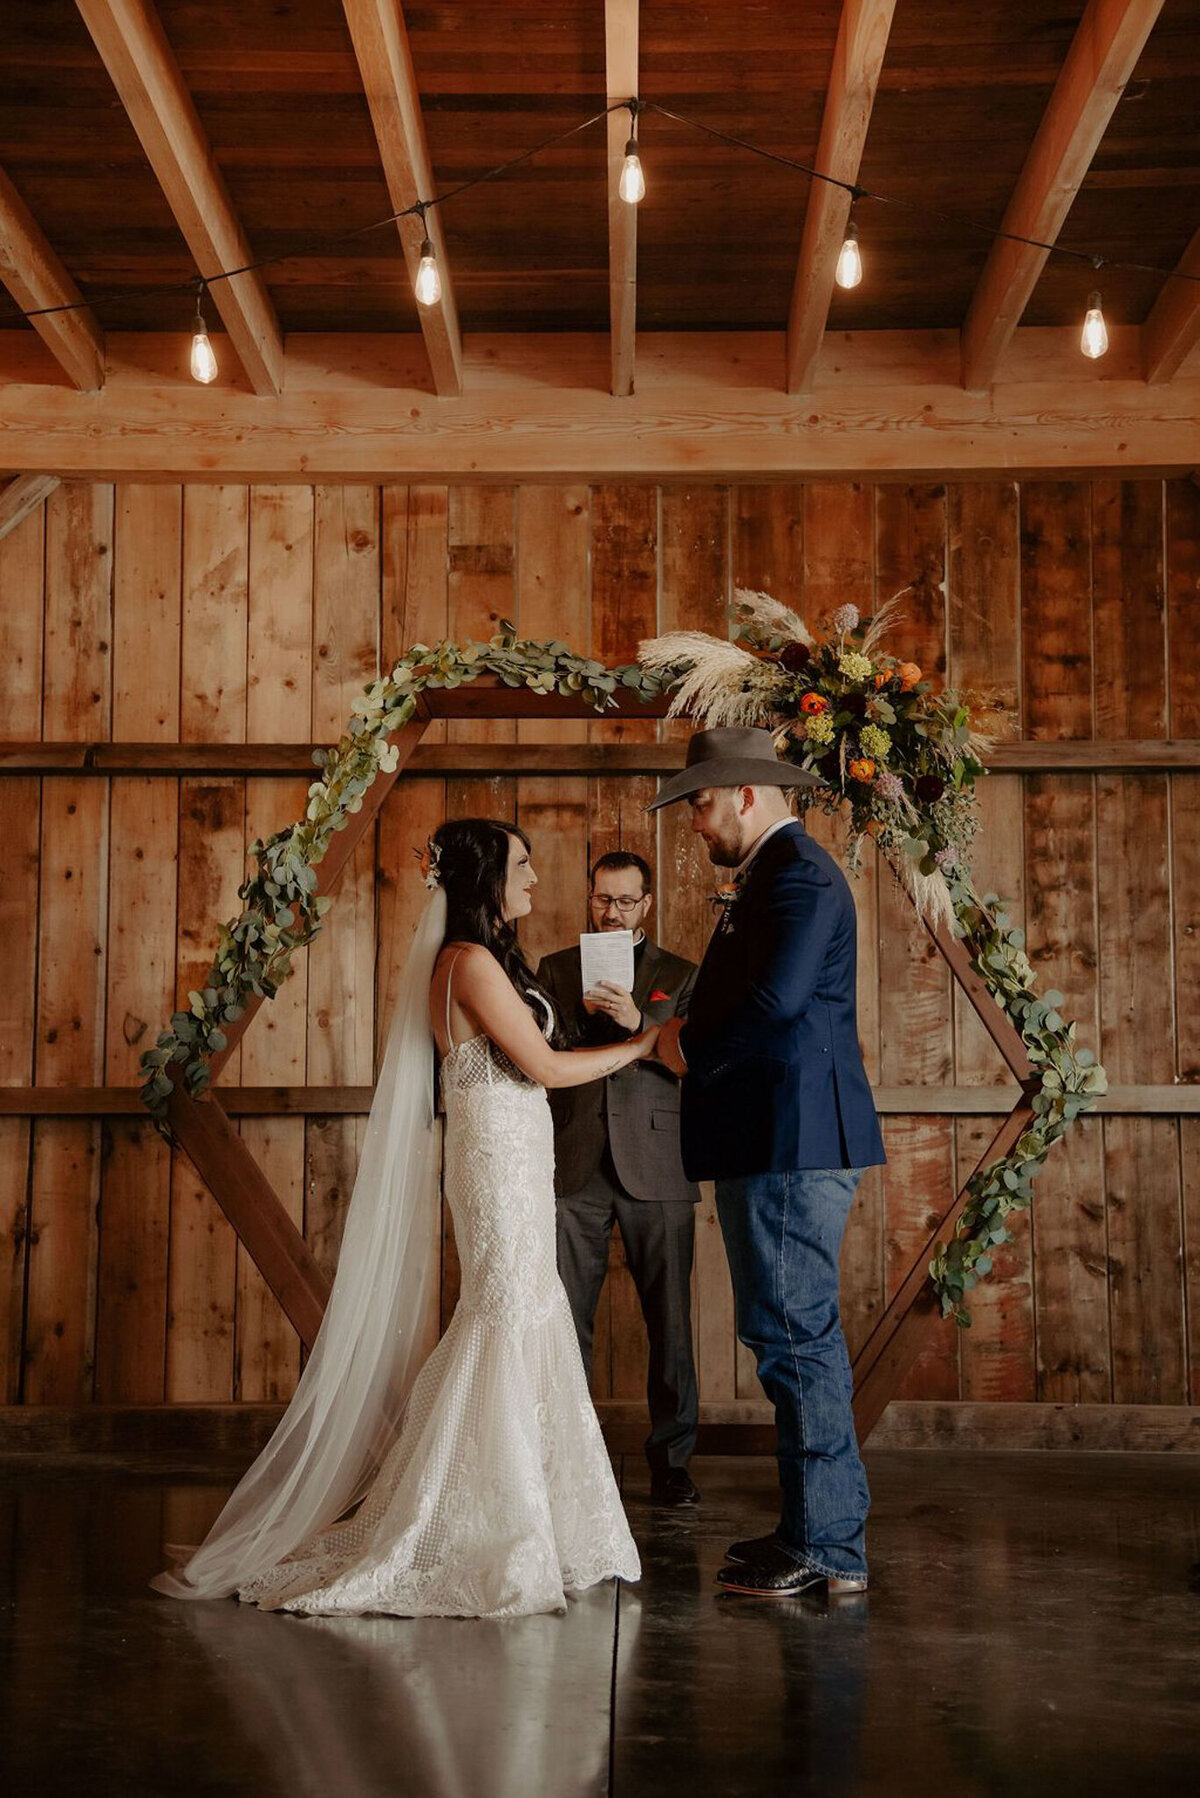 Indoor rustic wedding ceremony at Countryside Barn, rustic, country Lethbridge, Alberta wedding venue, featured on the Brontë Bride Vendor Guide.